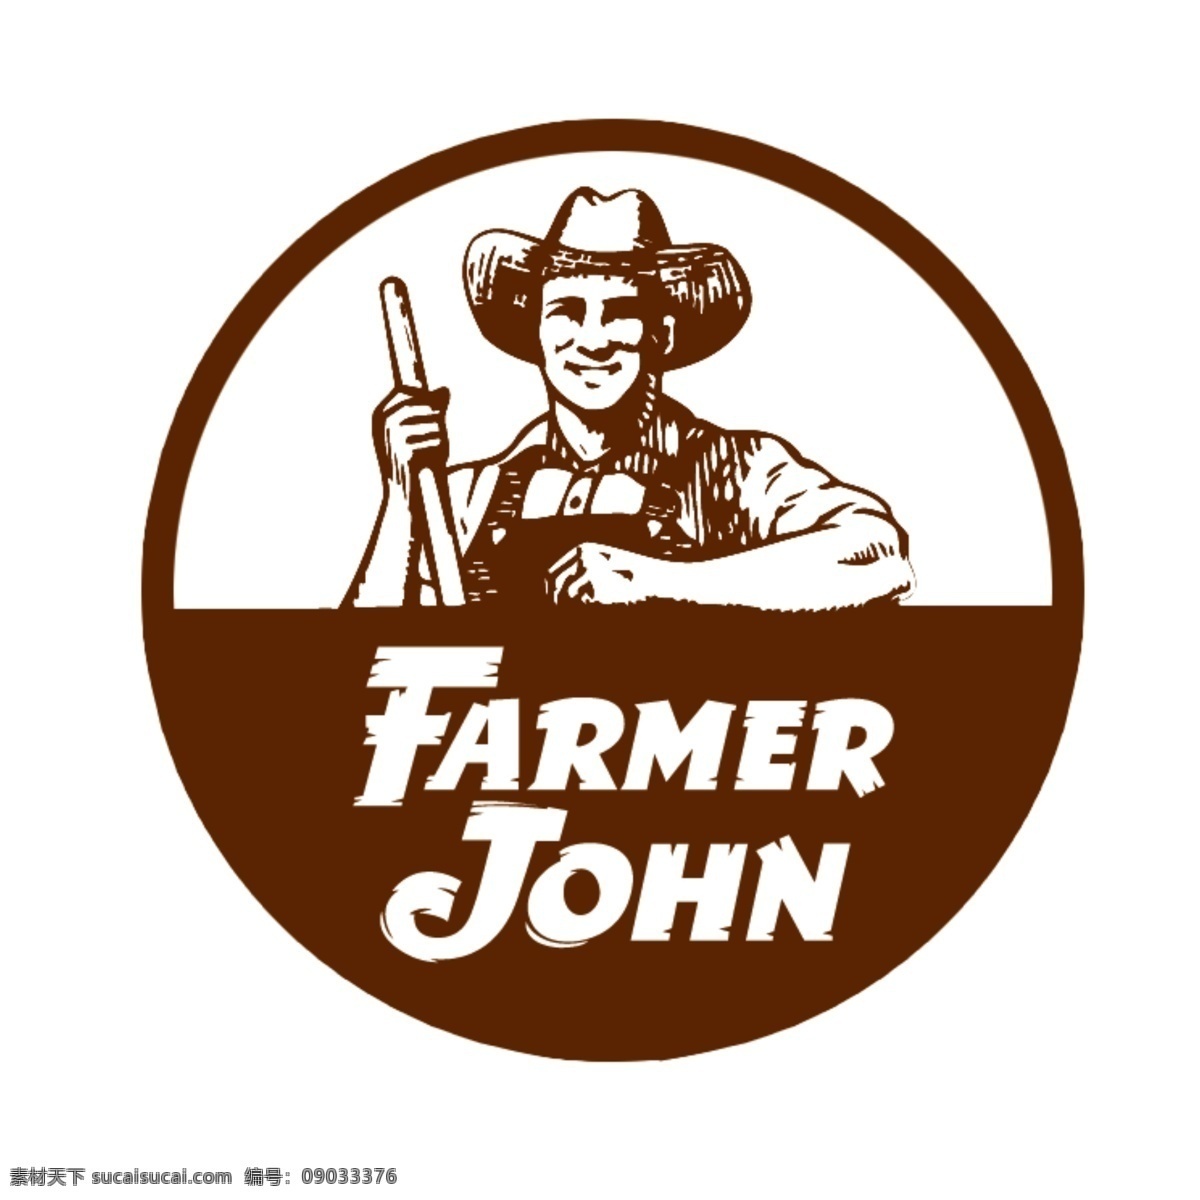 农民约翰 农民 约翰 农民矢量图 矢量约翰 farmer john 图标